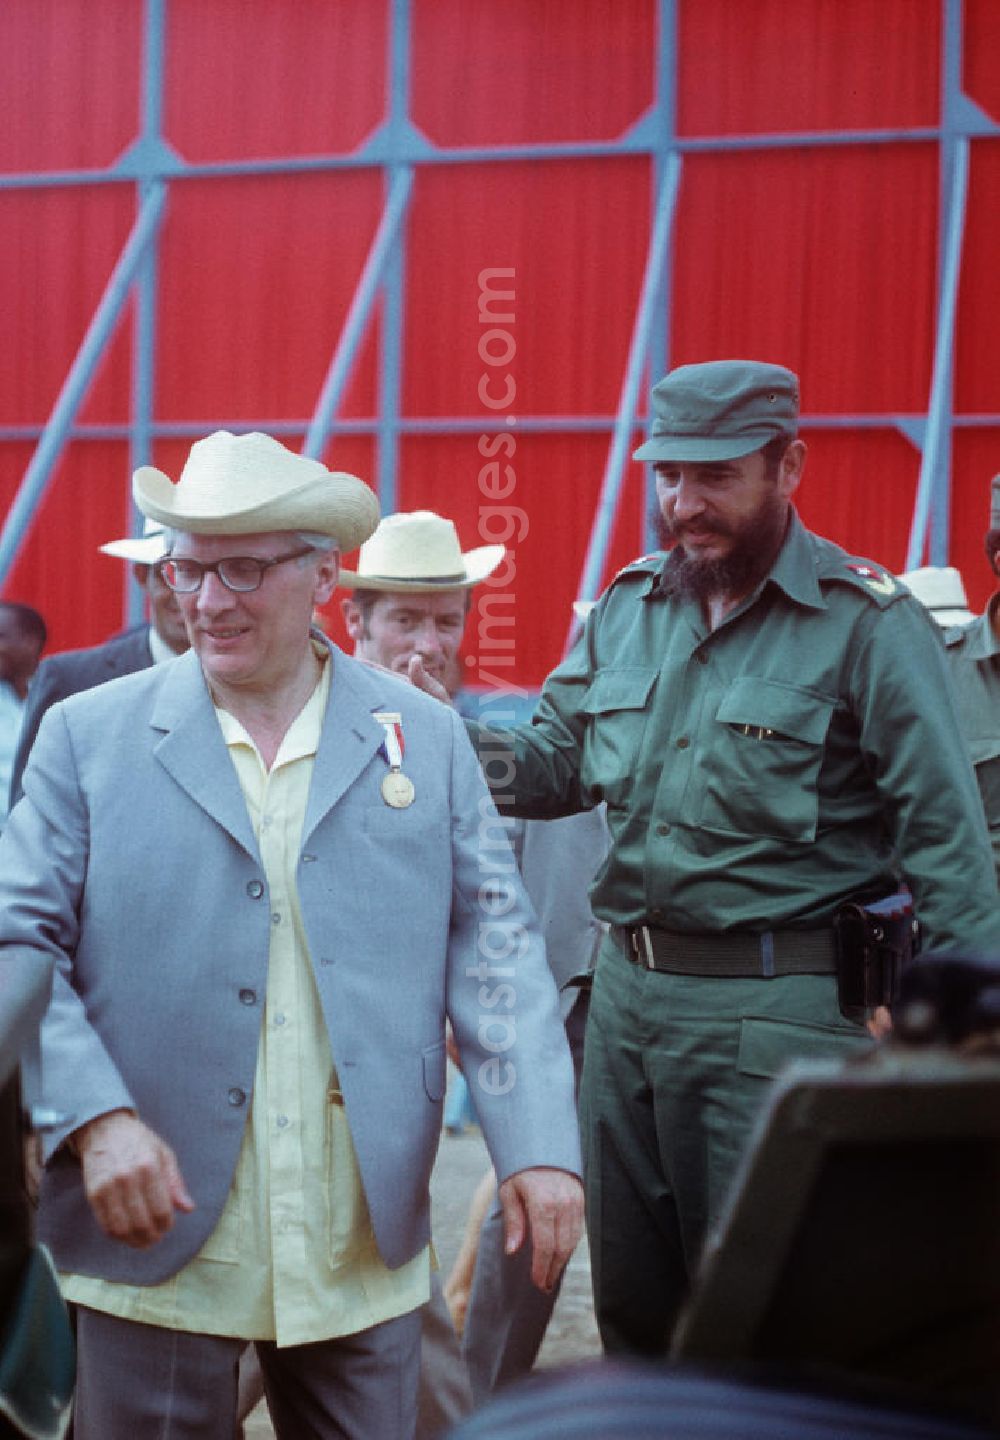 GDR image archive: Cienfuegos - Der Staats- und Parteivorsitzende der DDR, Erich Honecker, nach der Großkundgebung im kubanischen Cienfuegos mit dem kubanischen Regierungschef Fidel Castro. Honecker stattete vom 2